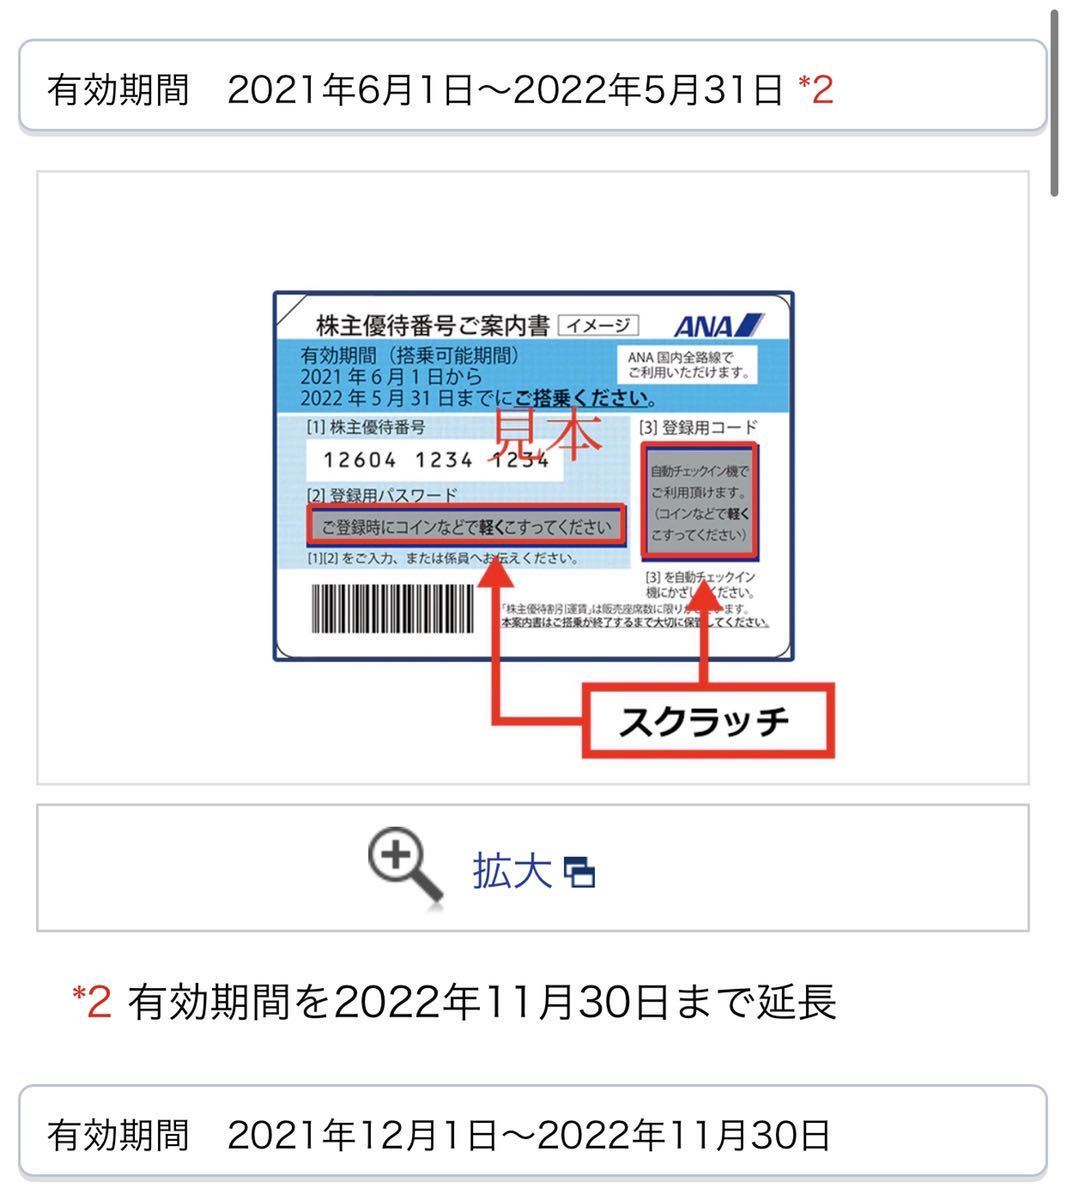 送料無料 ANA 全日空株主優待券 3枚セット 有効期限延長 2022.11.30まで 番号通知のみ 発送も可 2022年11月30日 航空券 検索 日本航空 JAL_画像2